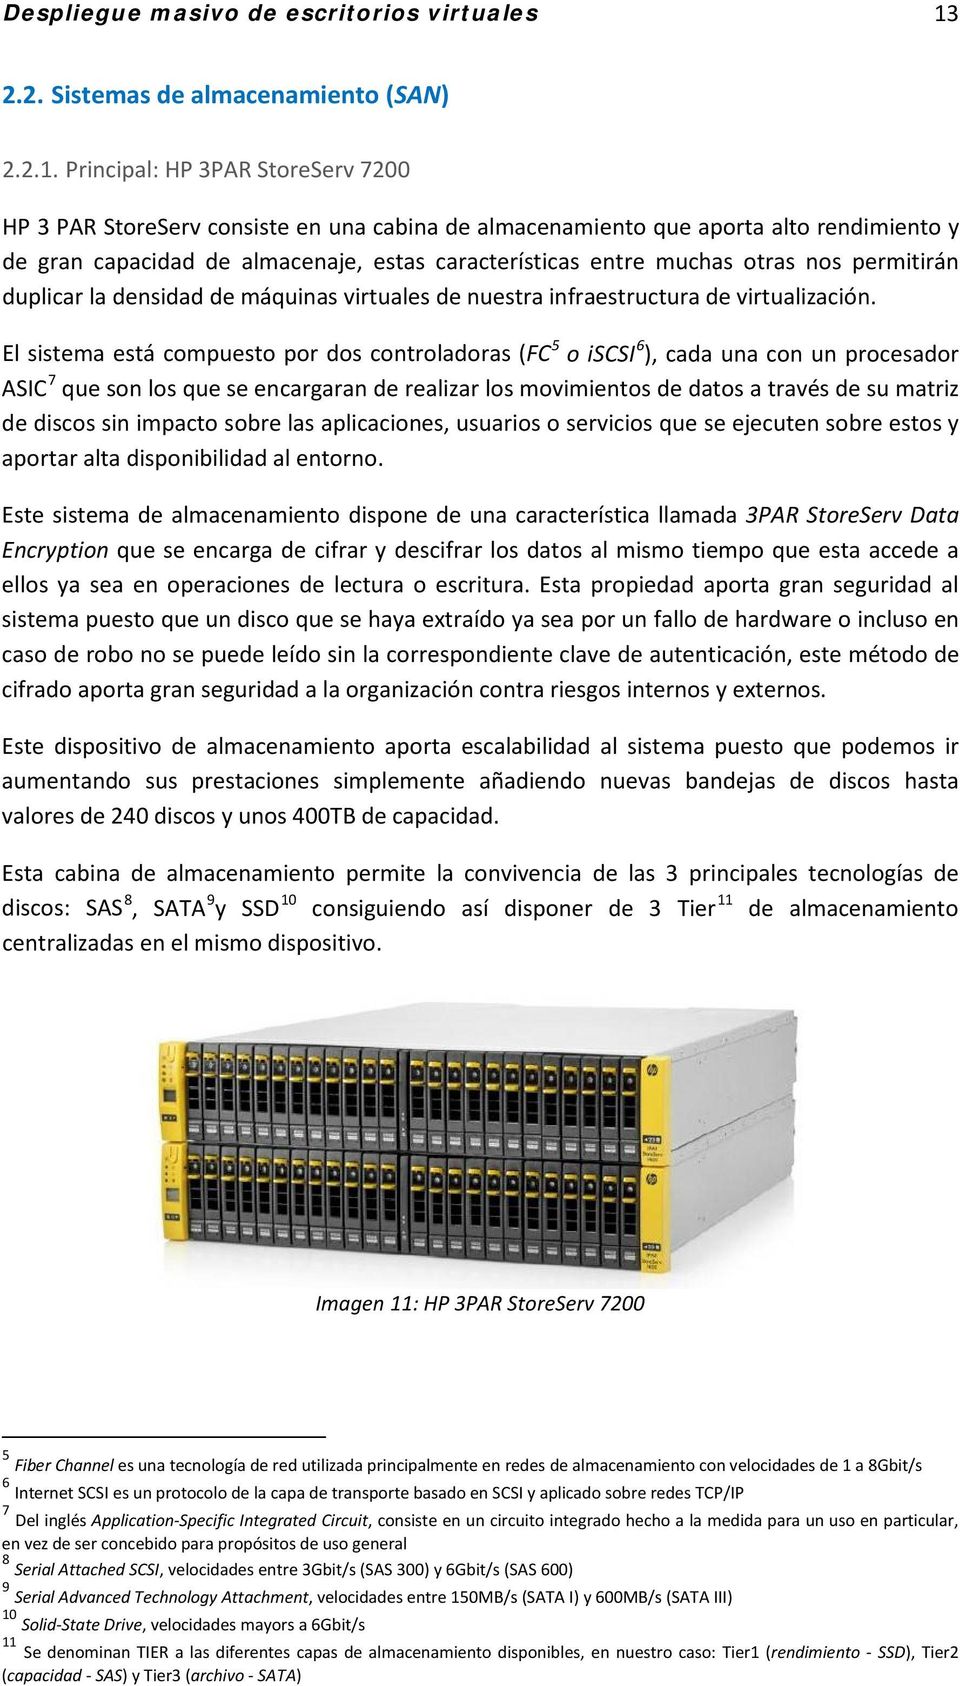 Principal: HP 3PAR StoreServ 7200 HP 3 PAR StoreServ consiste en una cabina de almacenamiento que aporta alto rendimiento y de gran capacidad de almacenaje, estas características entre muchas otras